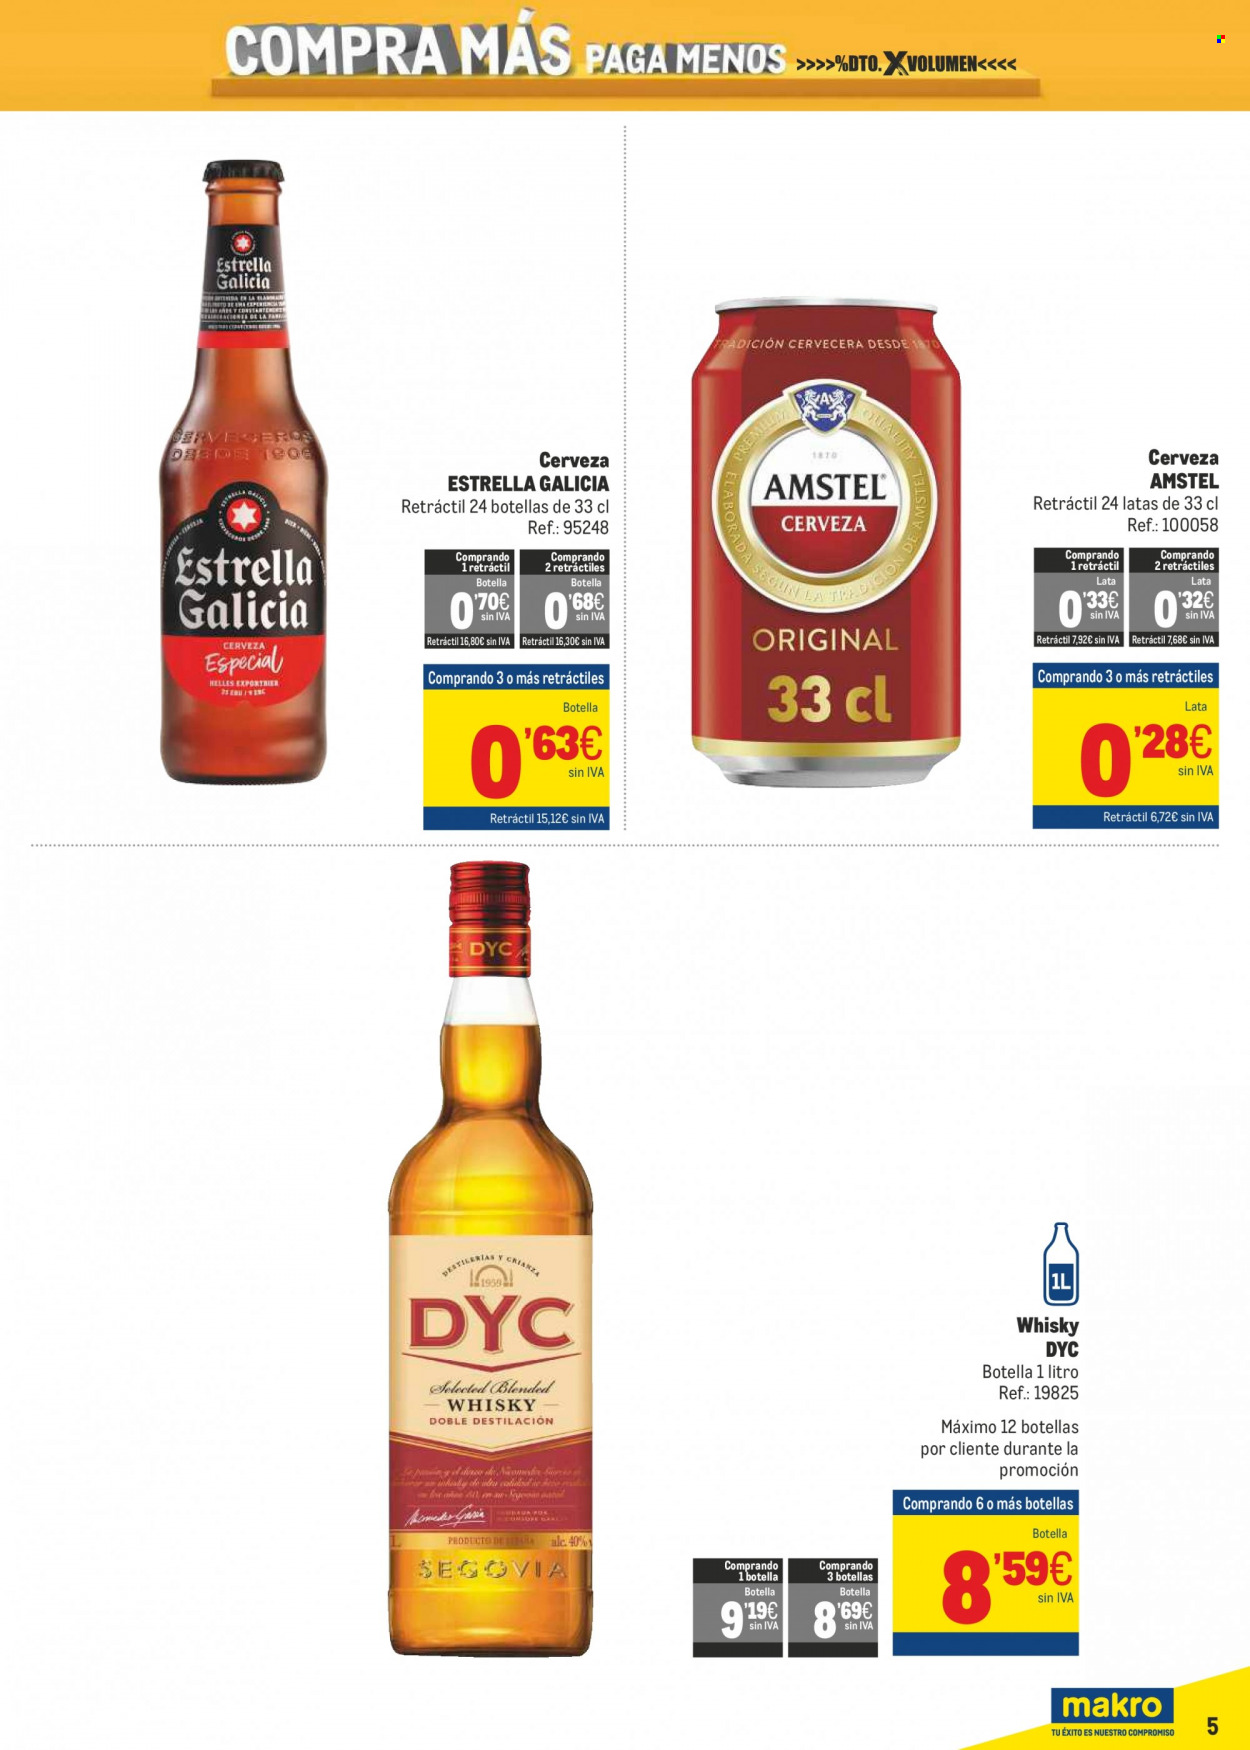 thumbnail - Folleto actual Makro - 20/01/22 - 16/02/22 - Ventas - Estrella Galicia, Crianza, DYC, whisky. Página 5.